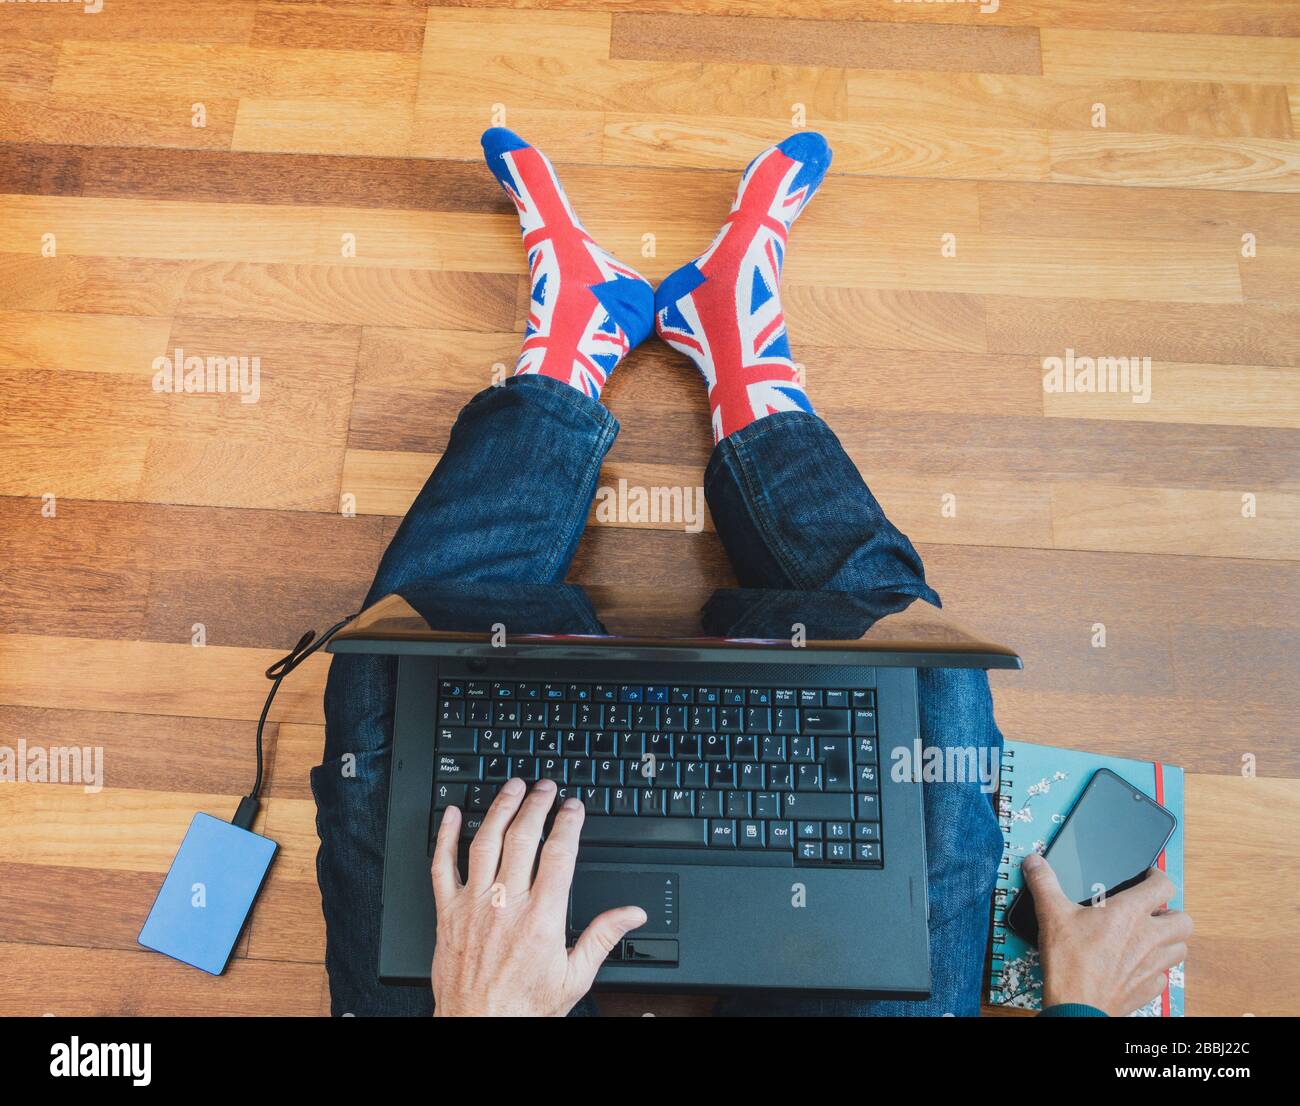 Uomo che indossa una calza jack a bandiera a Unione seduta su pavimento in legno con laptop. Lavorare da casa, auto isolamento, allontanamento sociale, Coronavirus... concetto Foto Stock